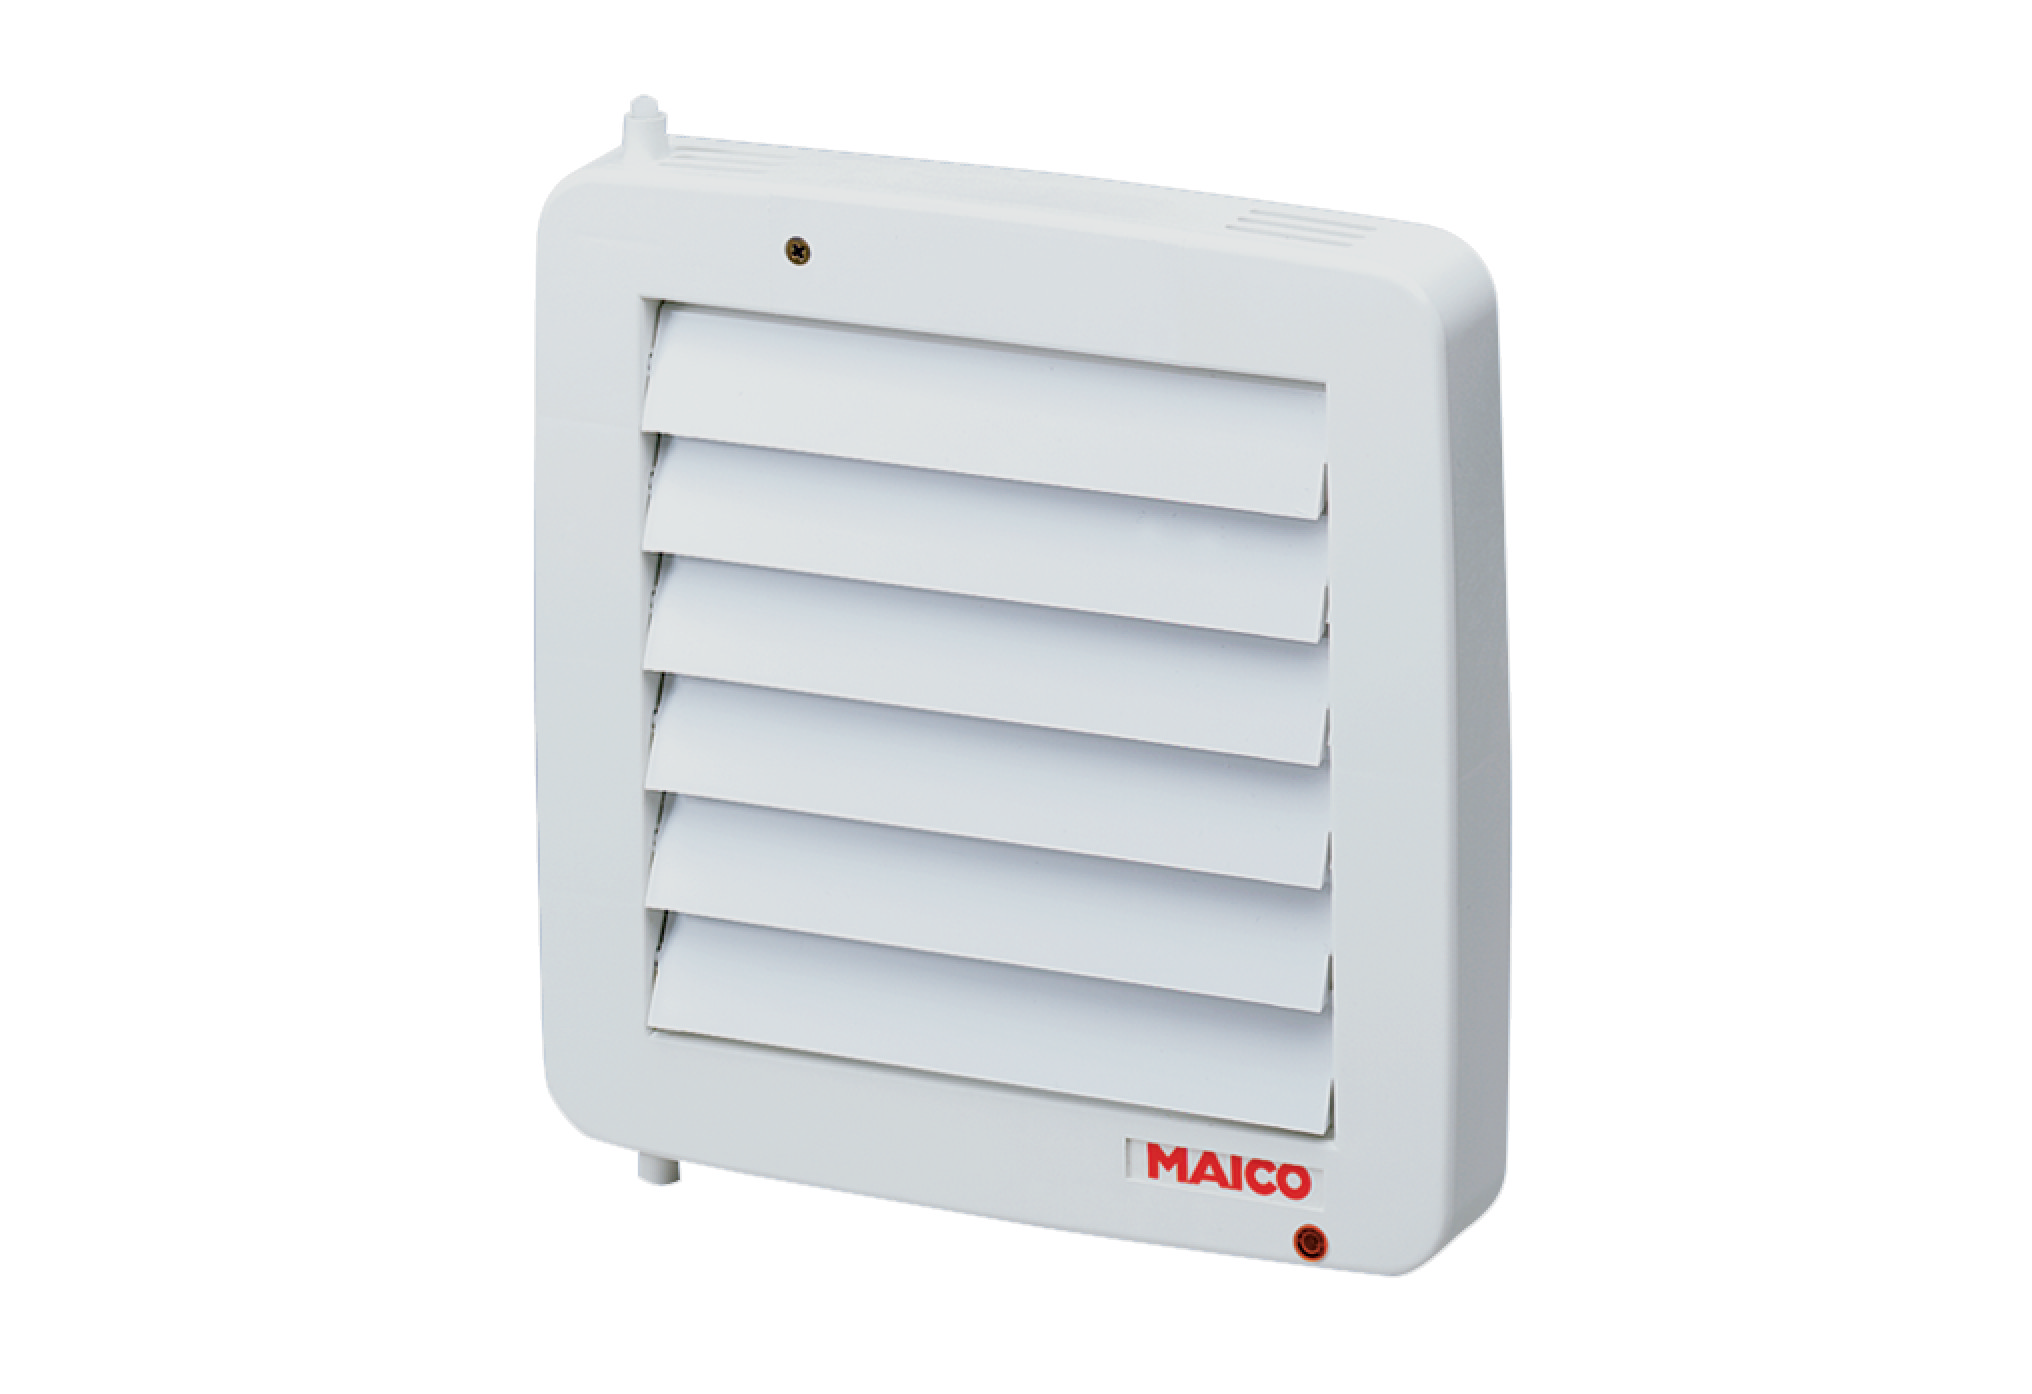 Інструкція решітка maico вентиляційна Maico AE 16